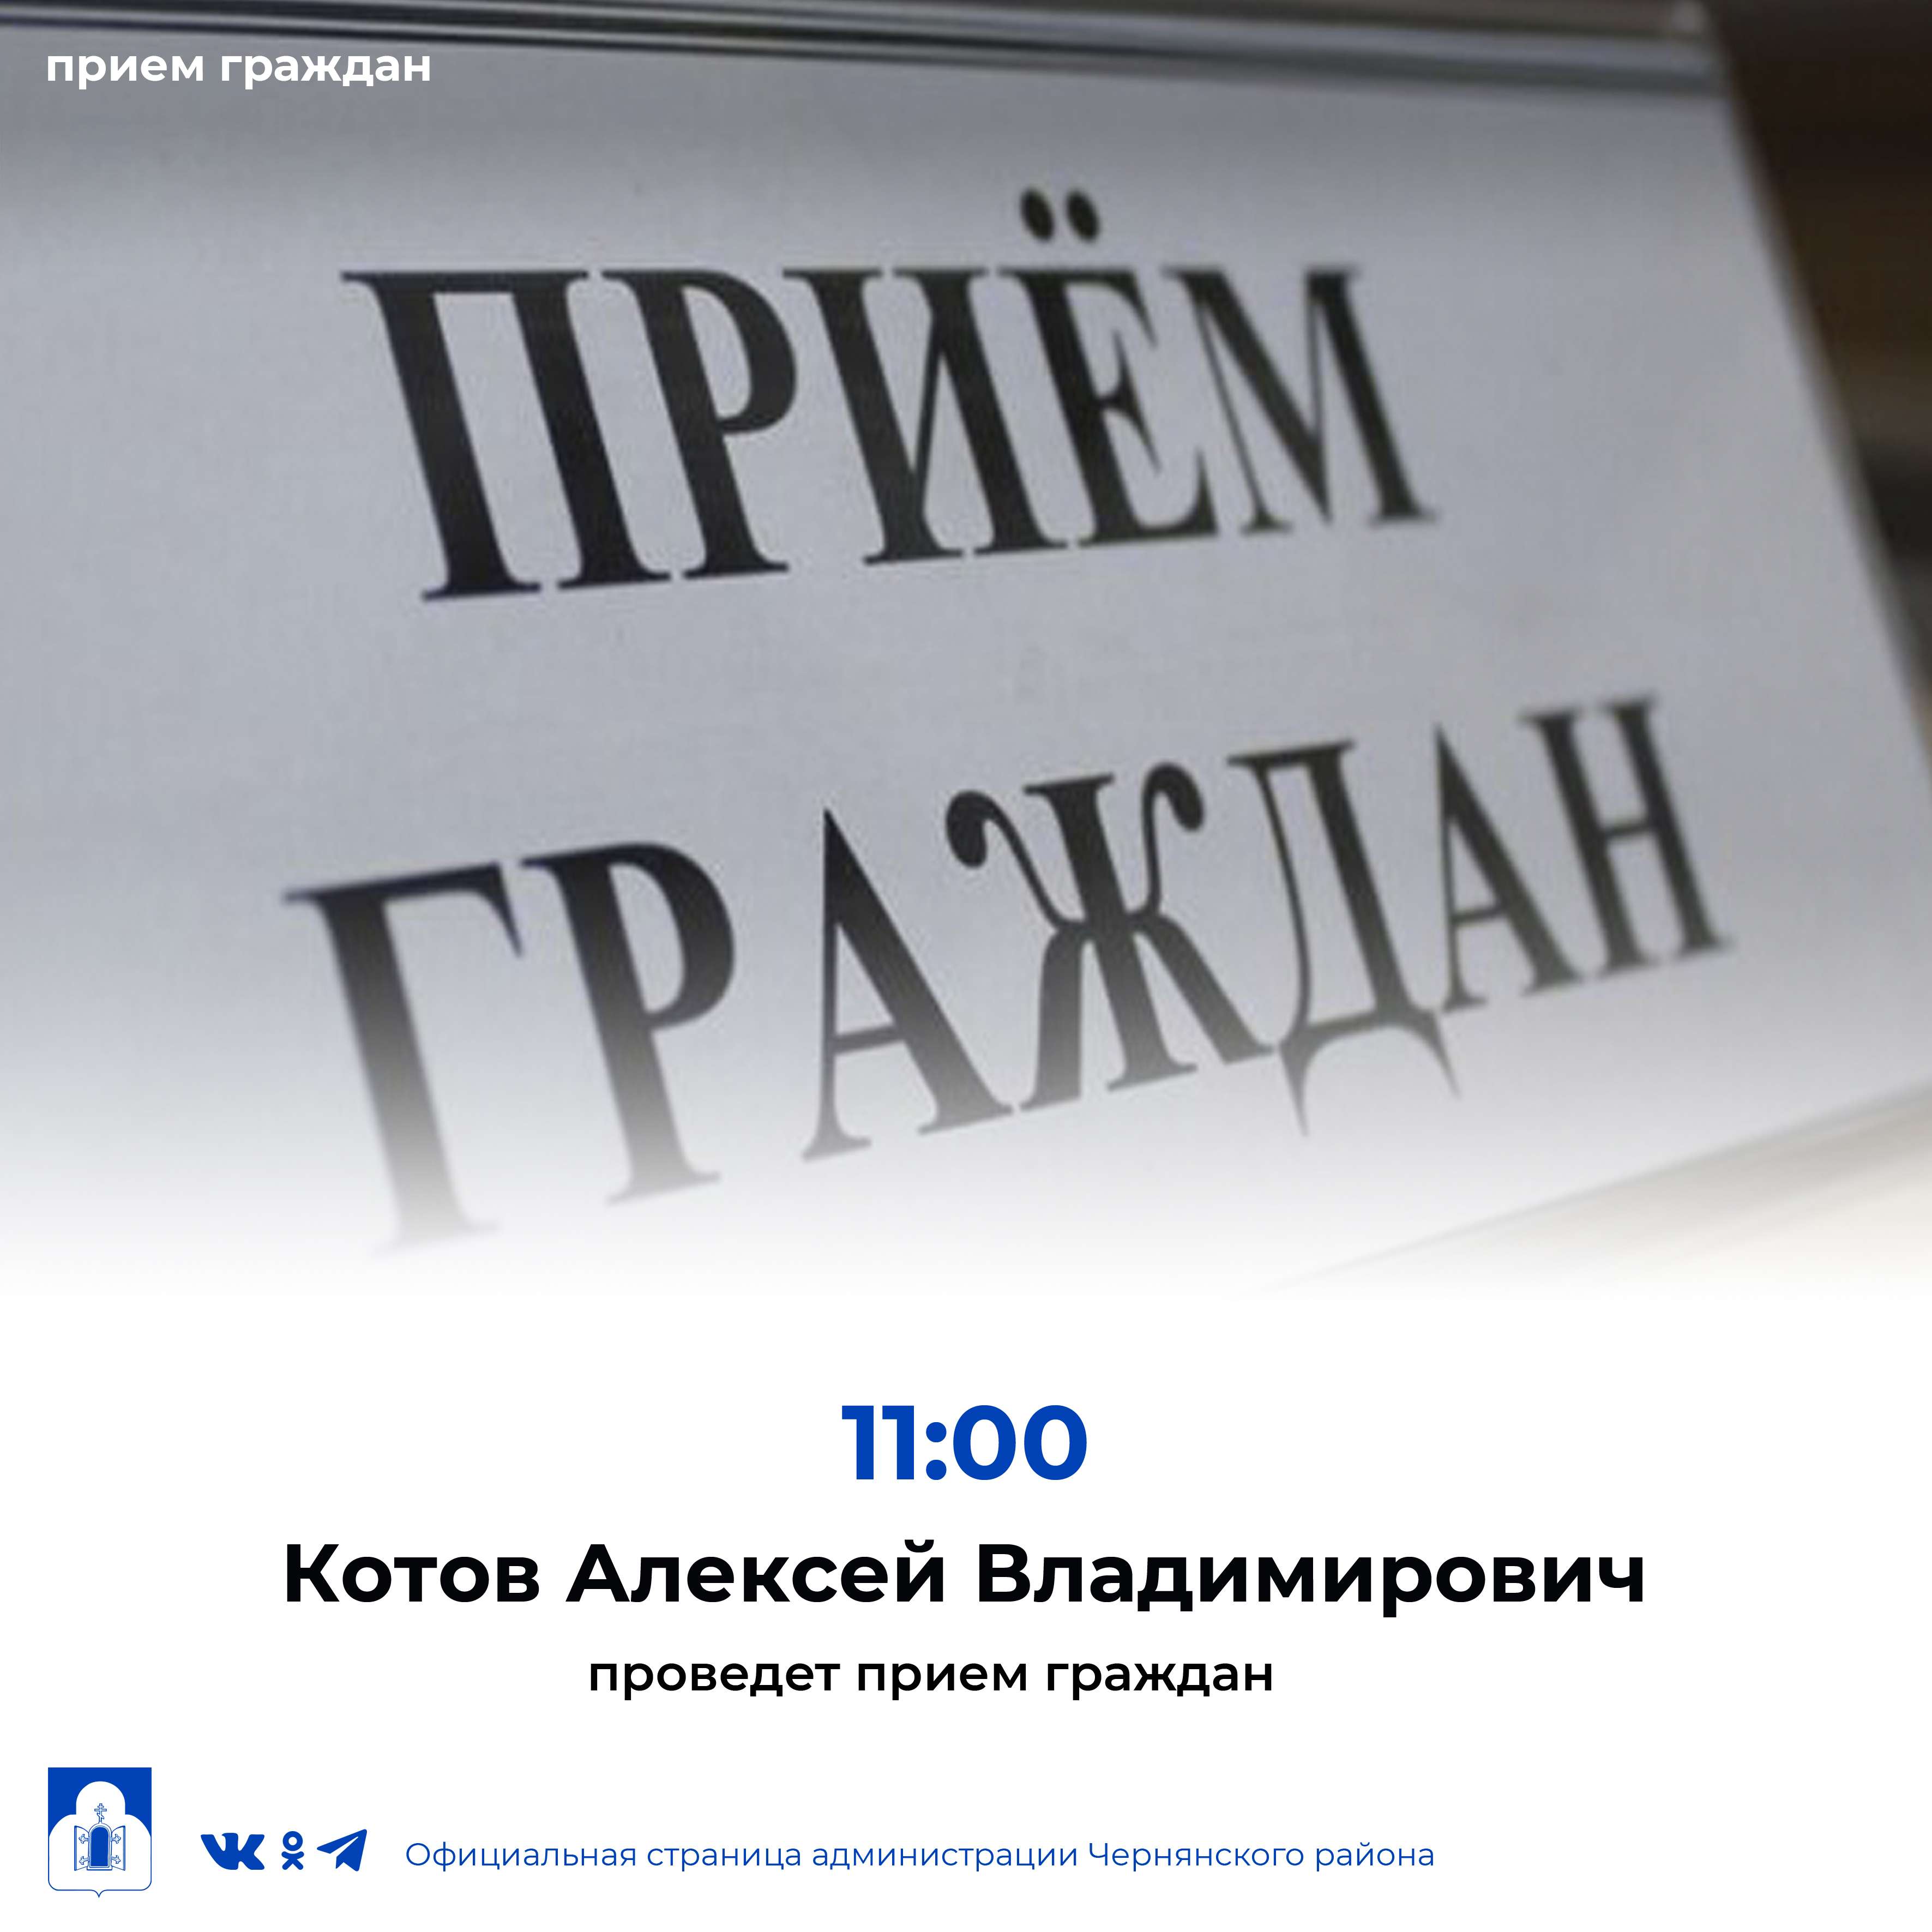 Заместитель прокурора Белгородской области Котов Алексей Владимирович проведет личный прием граждан.